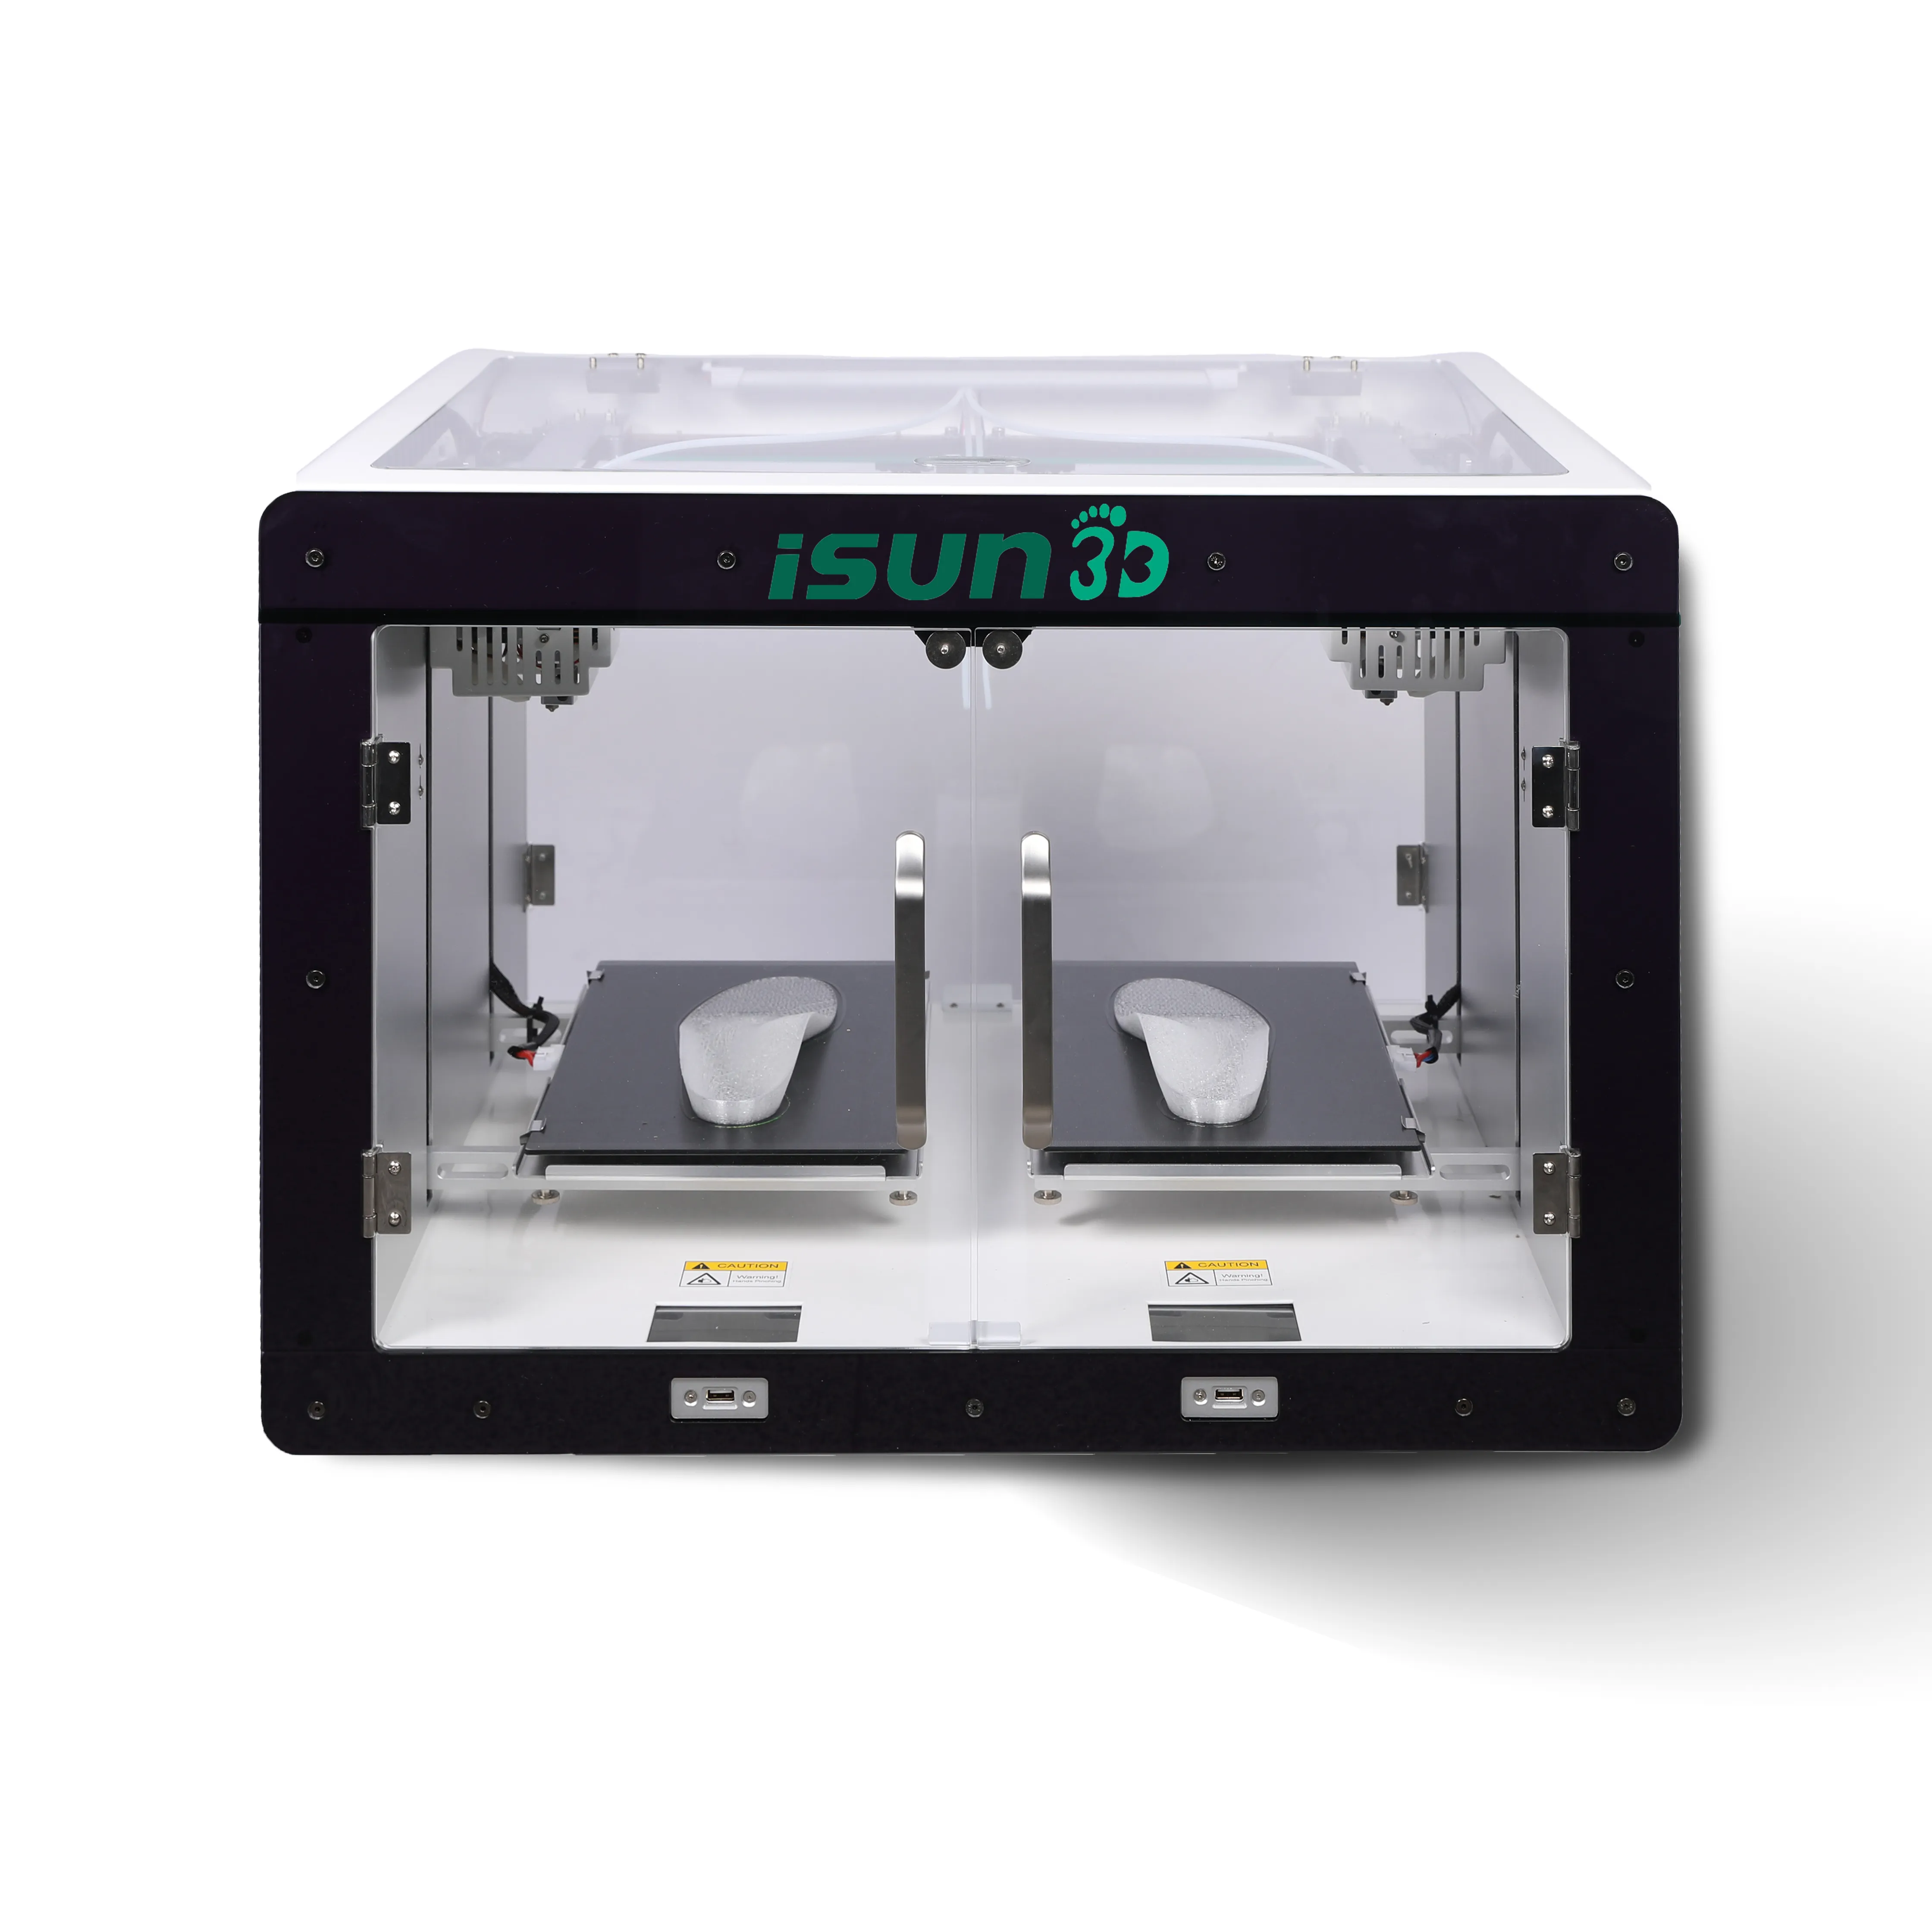 ISUN3D duplex 120 millimetri/s ad alta velocità 3D accessori per stampanti 3d stampante per solette kit fai da te